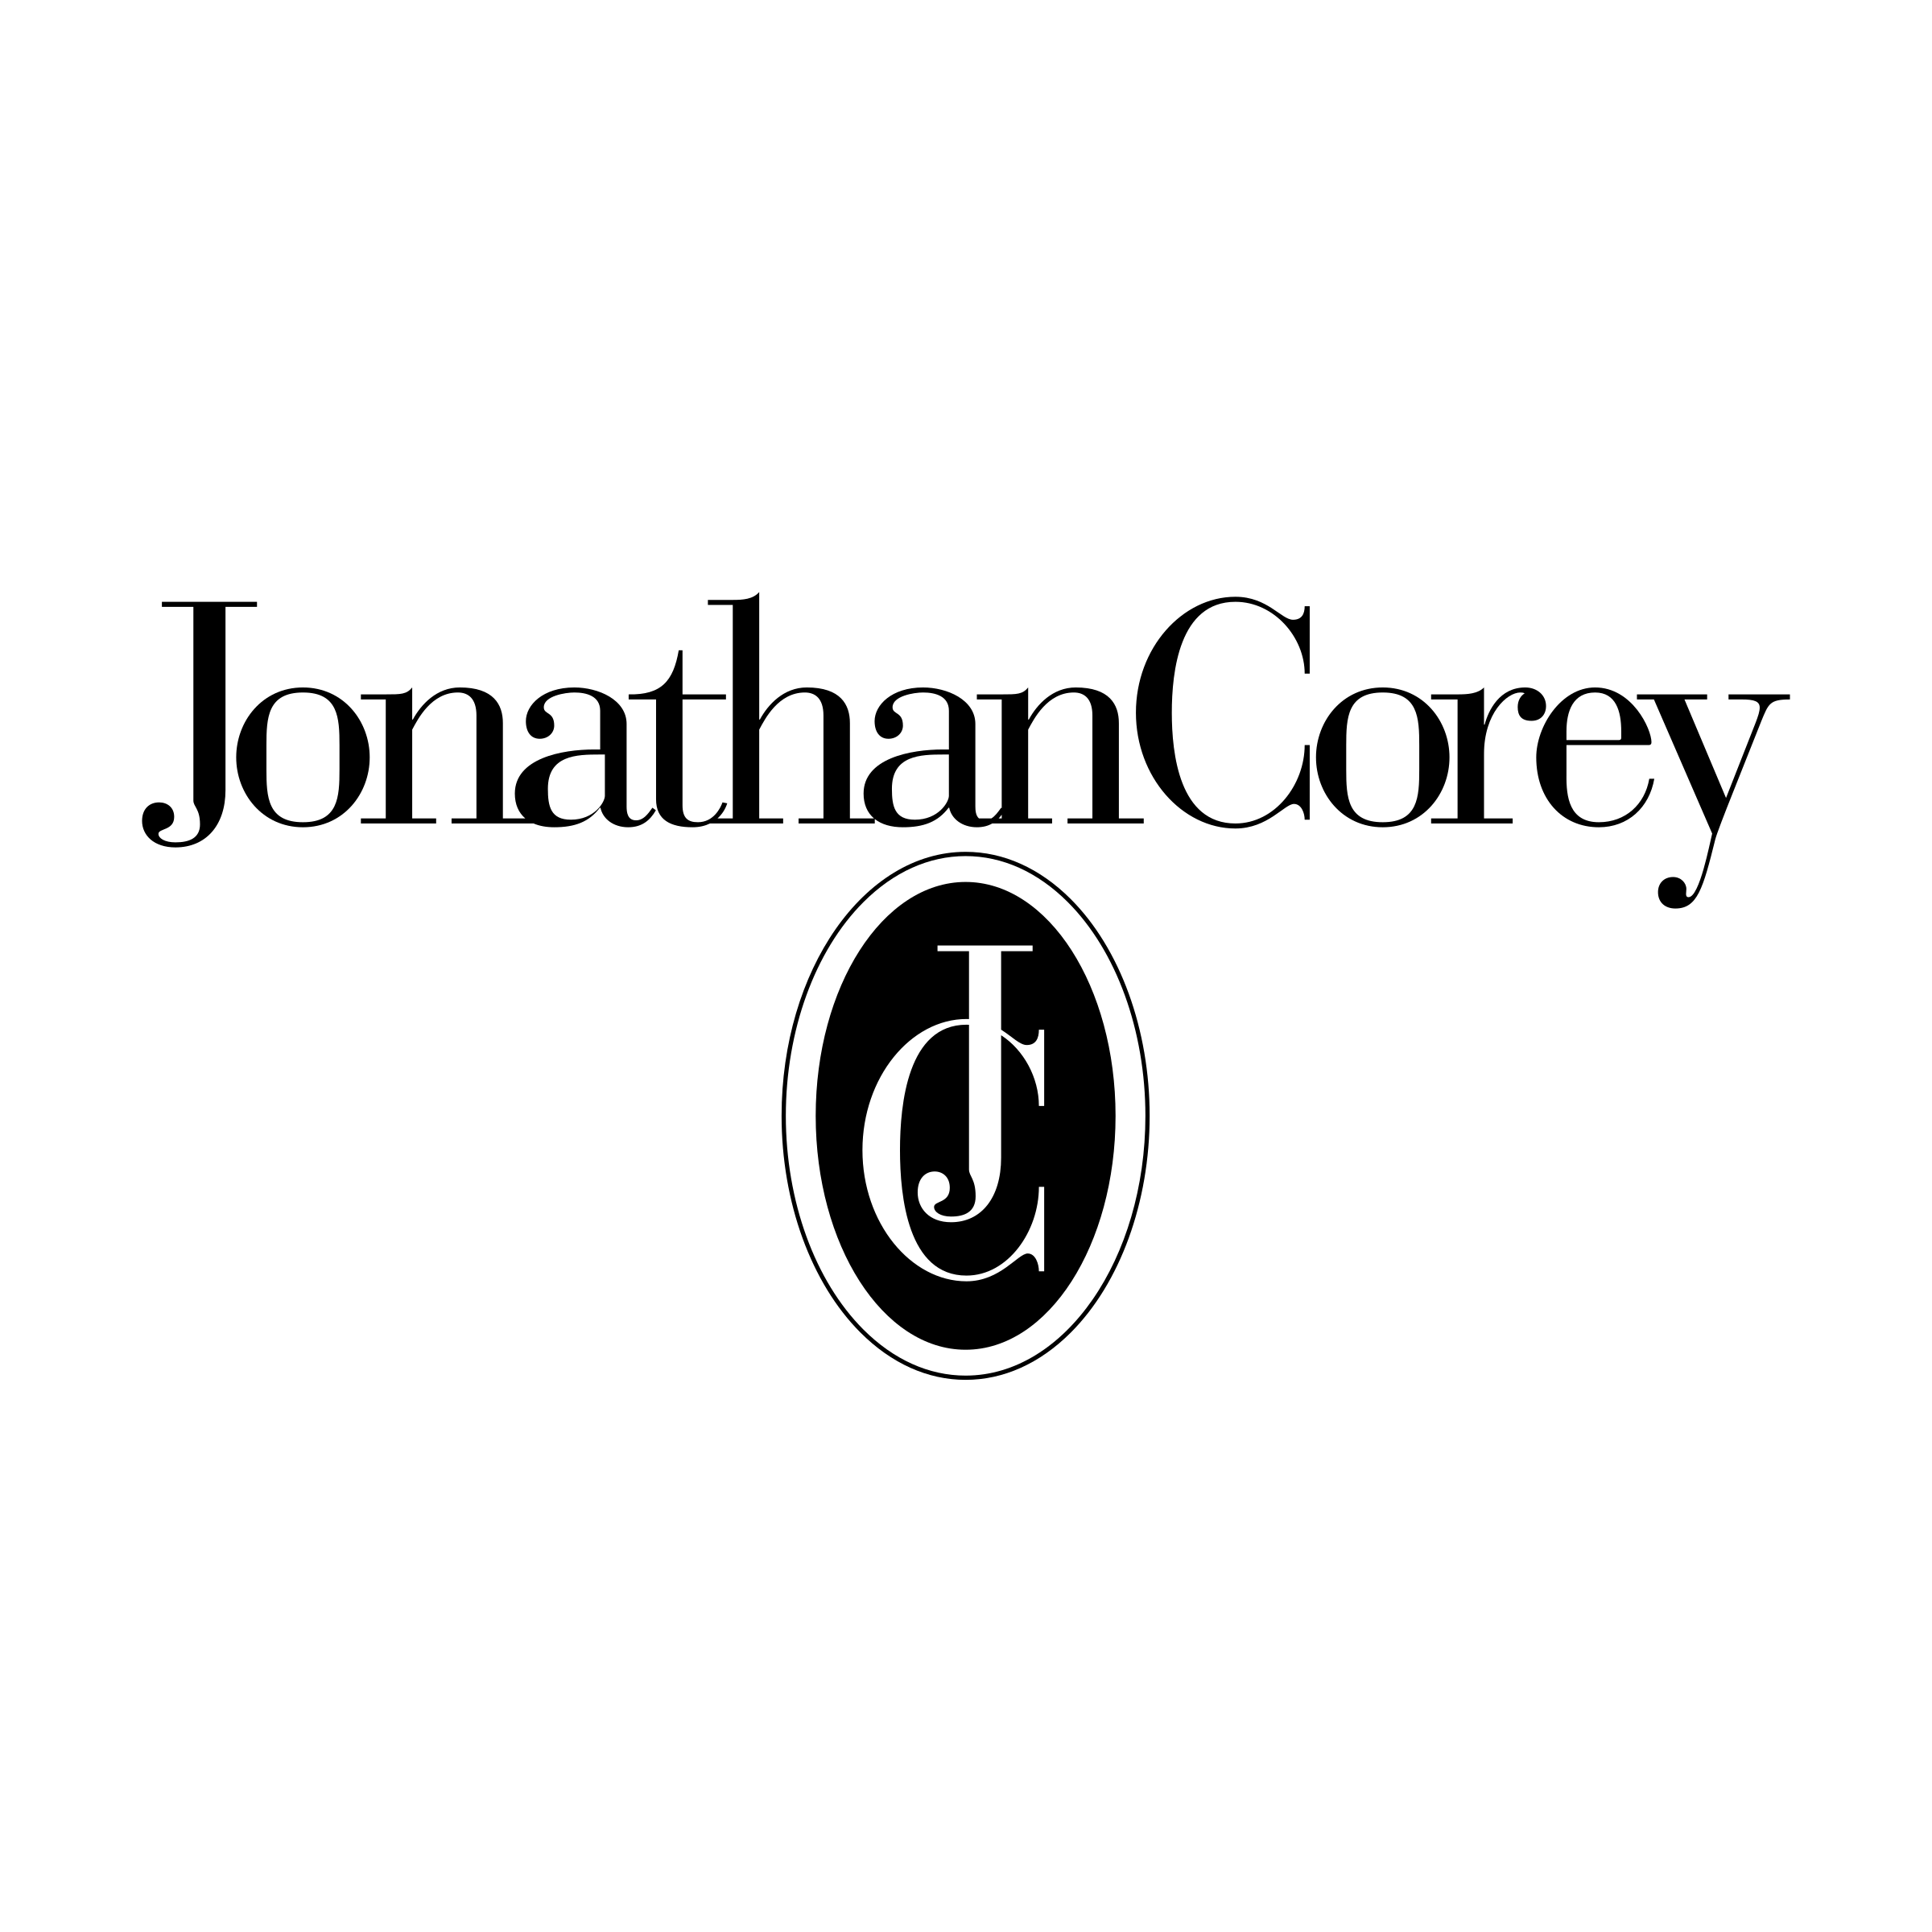 Corey Logo - Jonathan Corey Logo PNG Transparent & SVG Vector